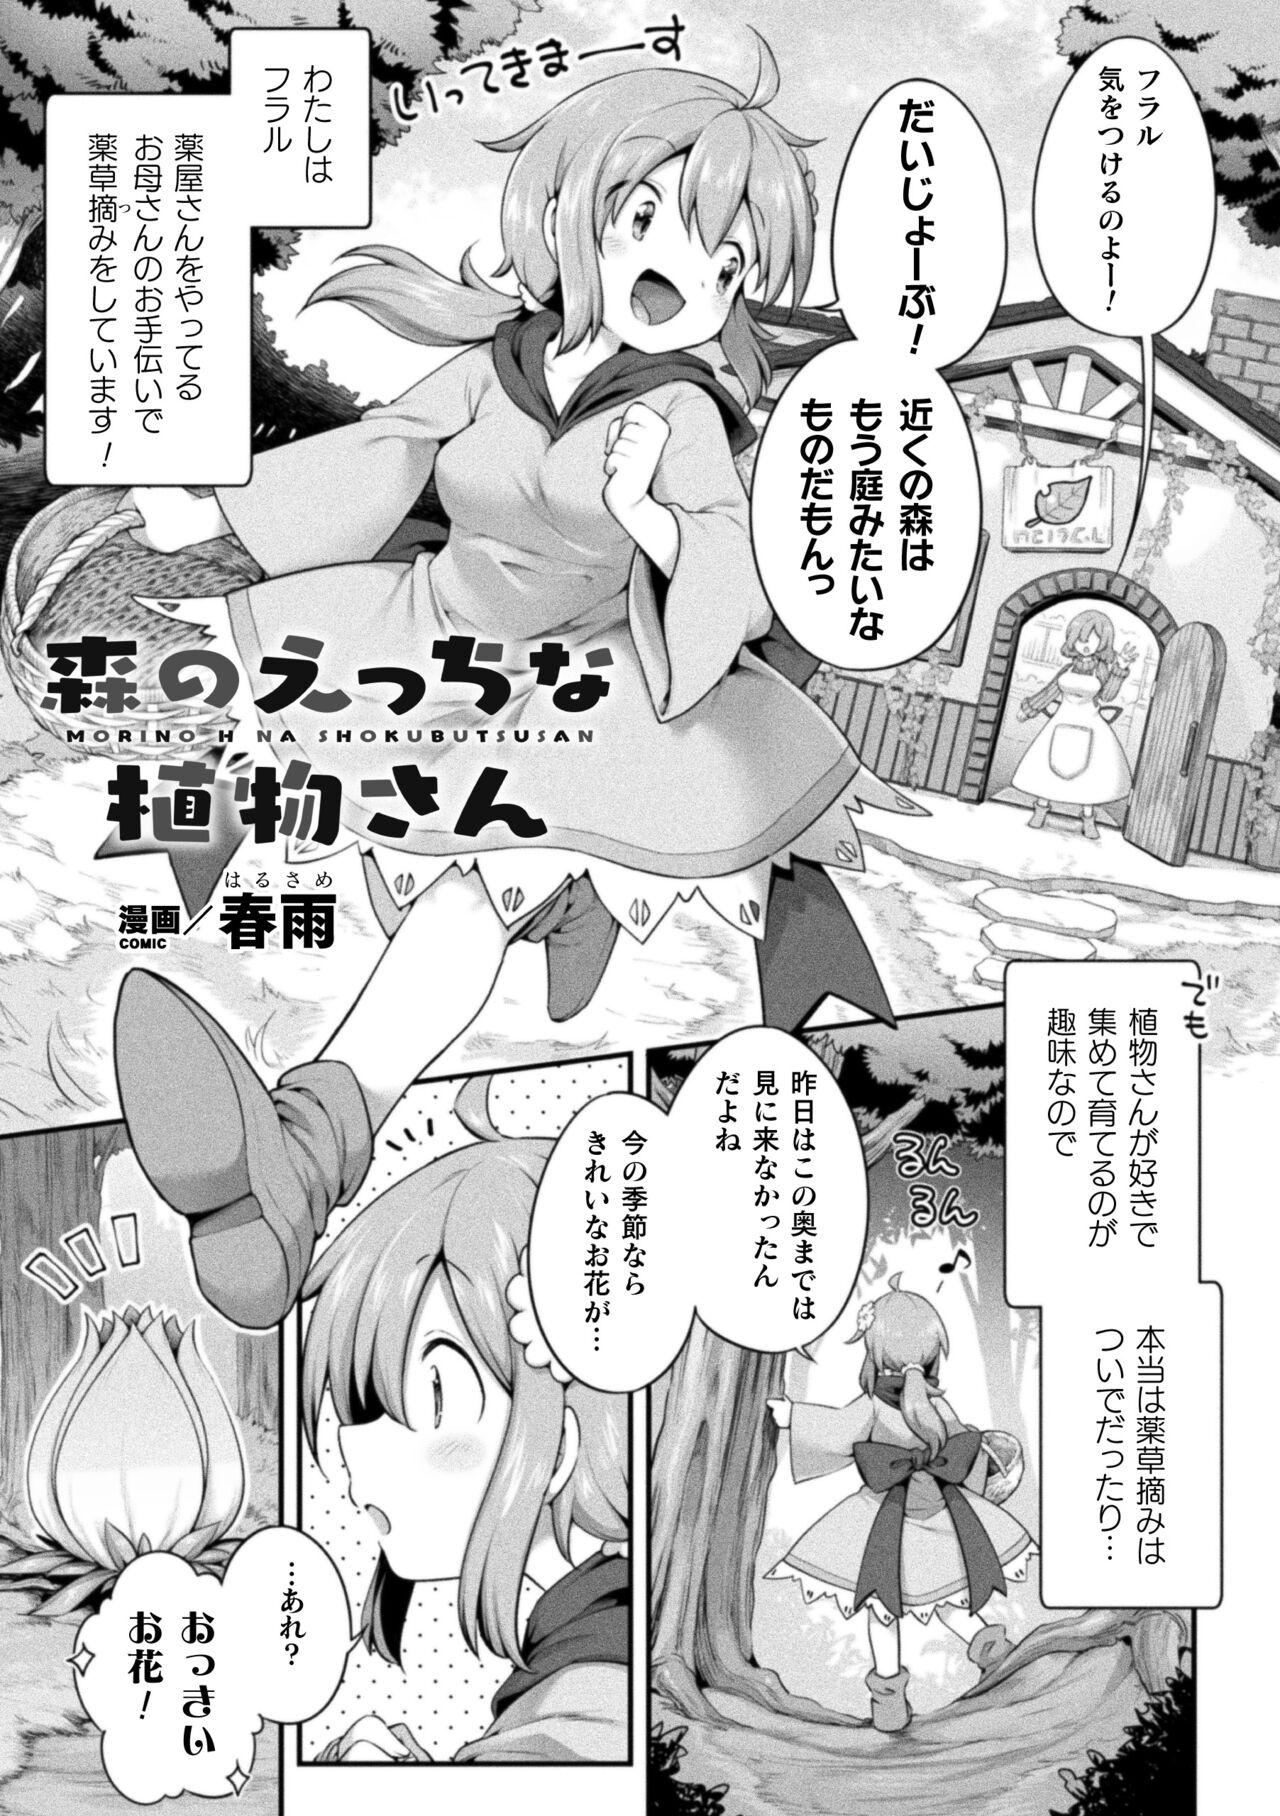 2D Comic Magazine Ishukan Yuri Ecchi Vol. 1 2